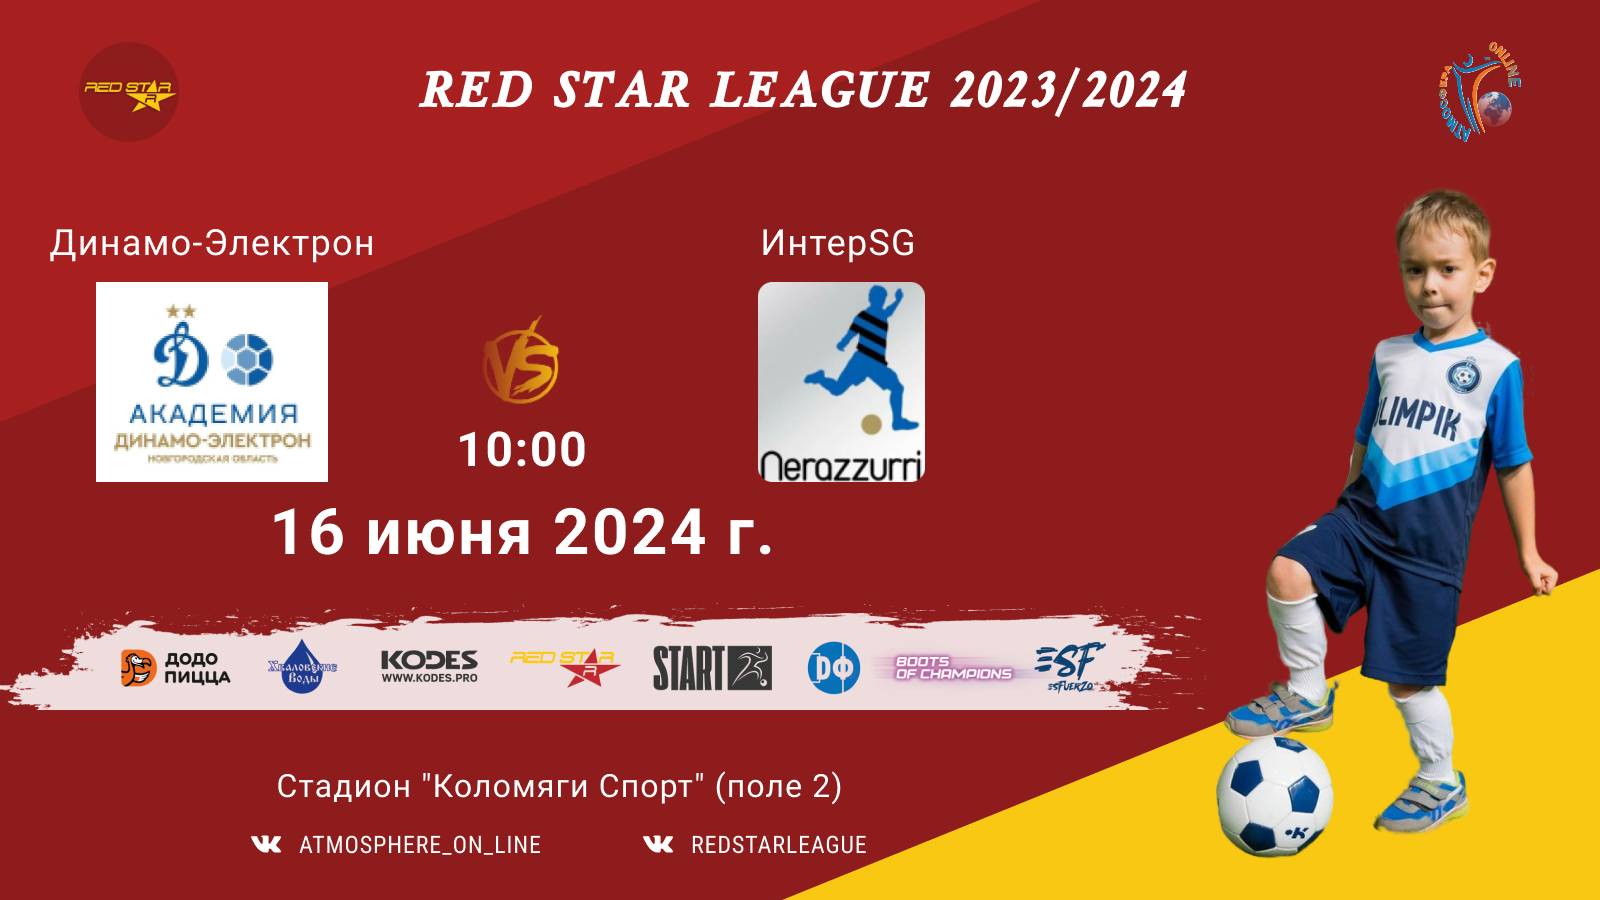 ФК "Динамо-Электрон" - ФК "ИнтерSG"/Red Star League, 16-06-2024 10:00